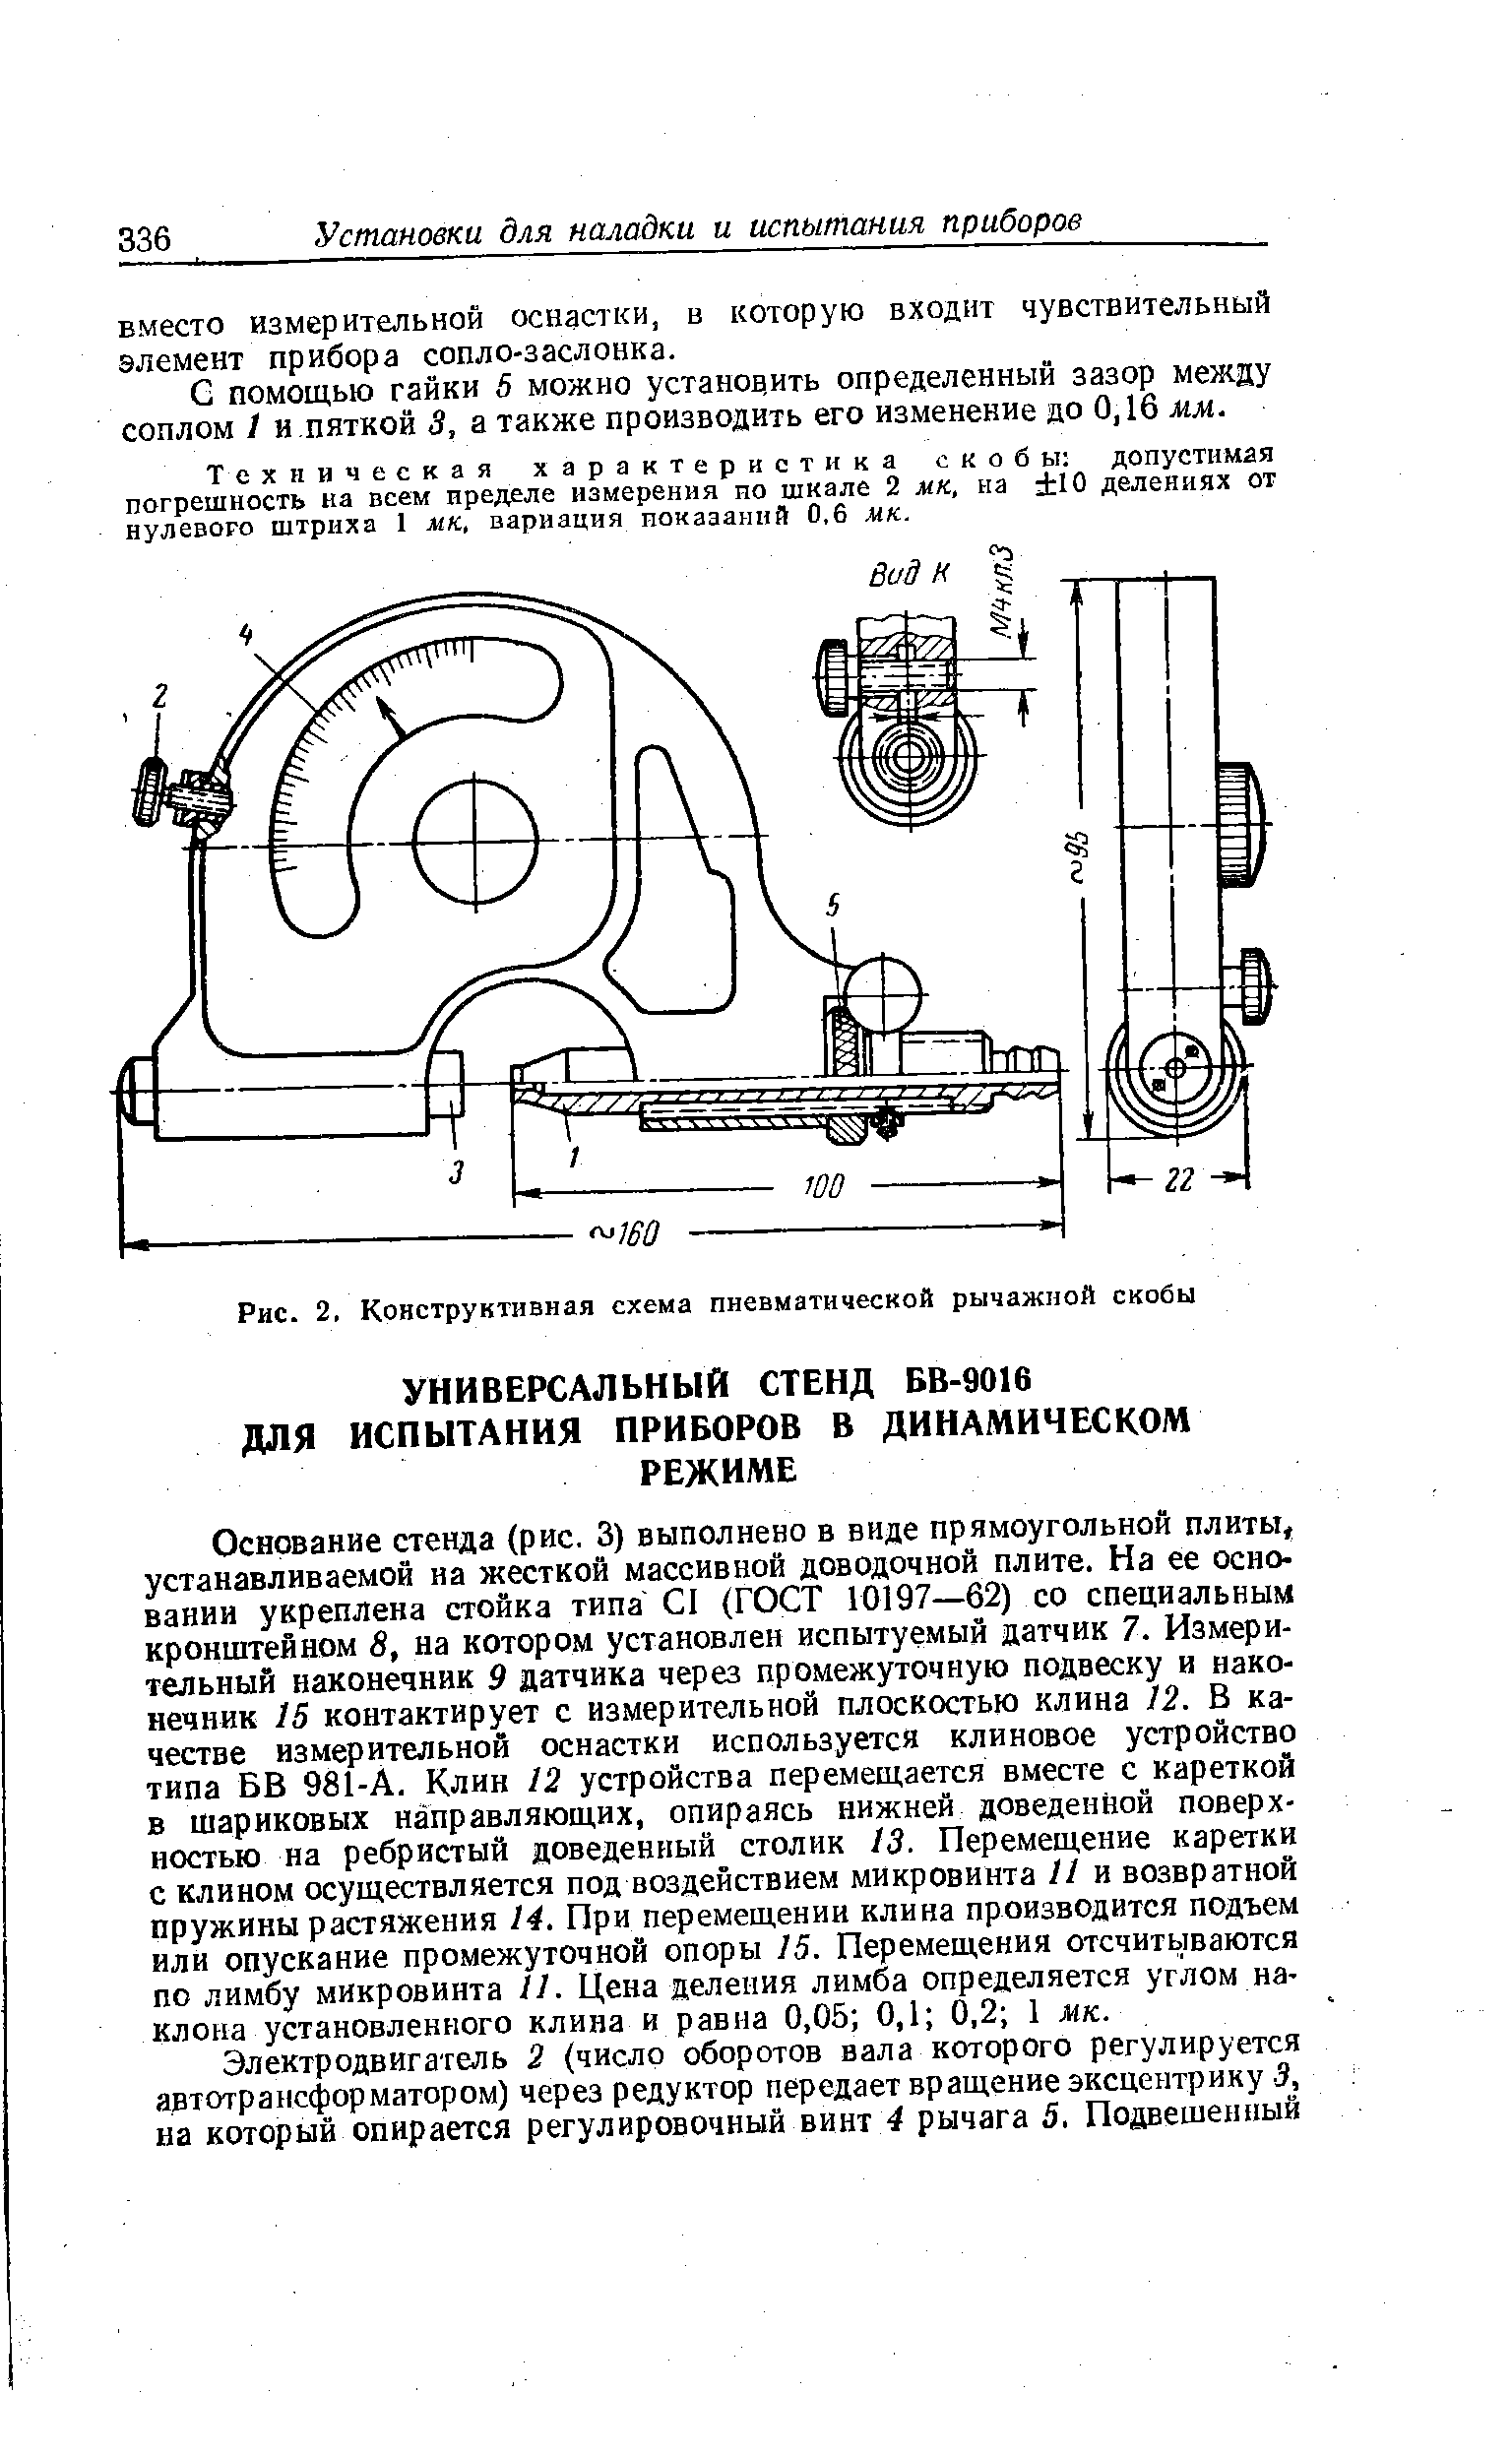 Рис. 2, Конструктивная схема пневматической рычажной скобы
